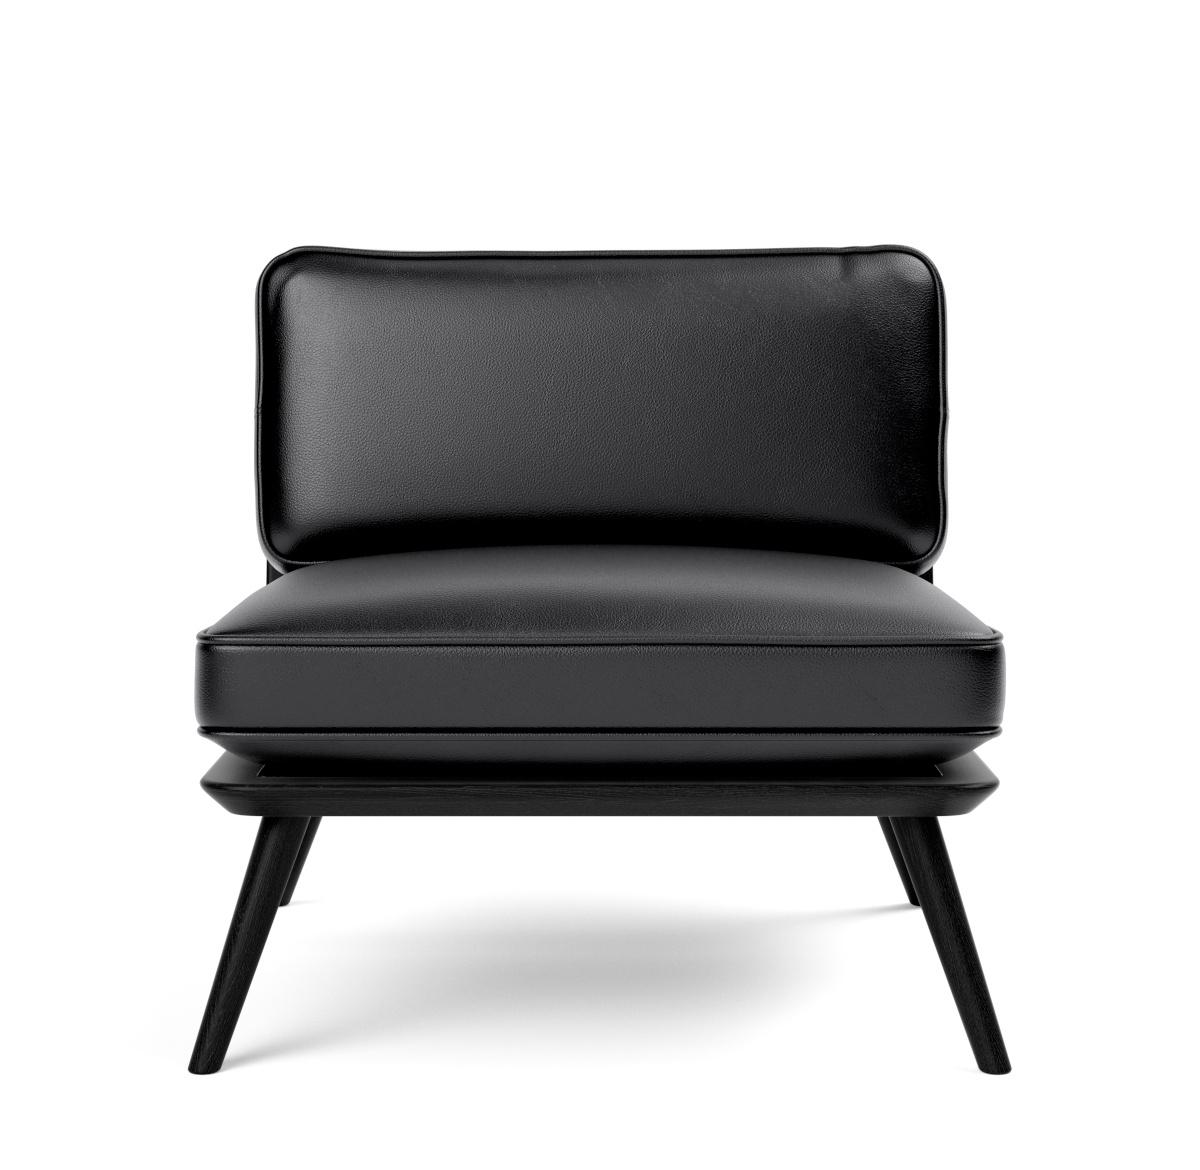 Spine Lounge Suite Chair, esche schwarz / leder primo 88 schwarz